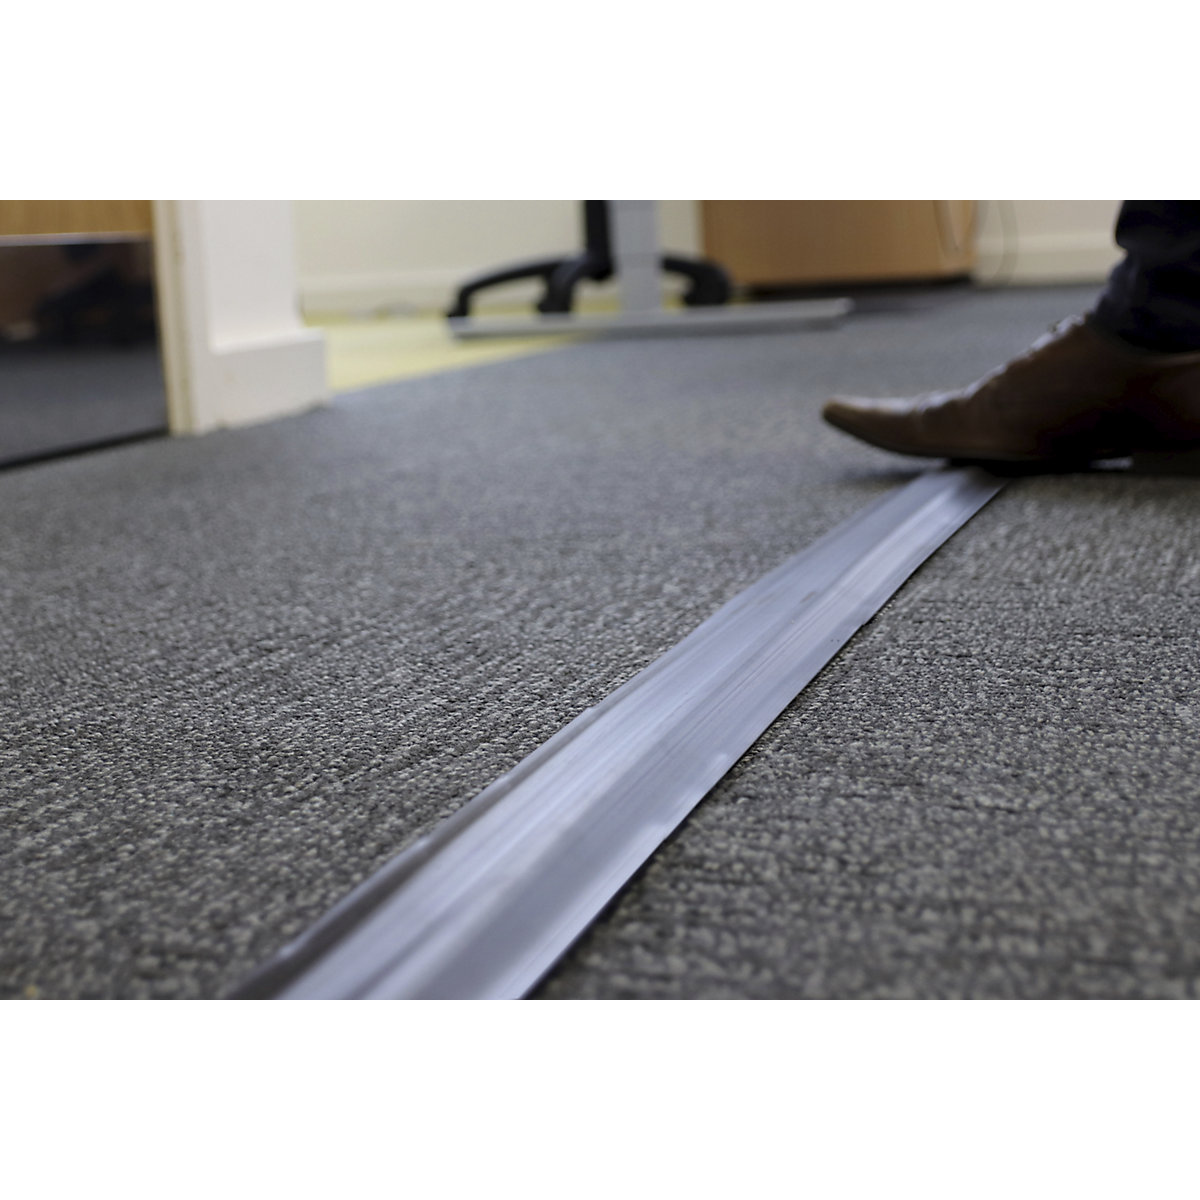 Canaleta pasacables de suelo. Cómo proteger cables en el piso